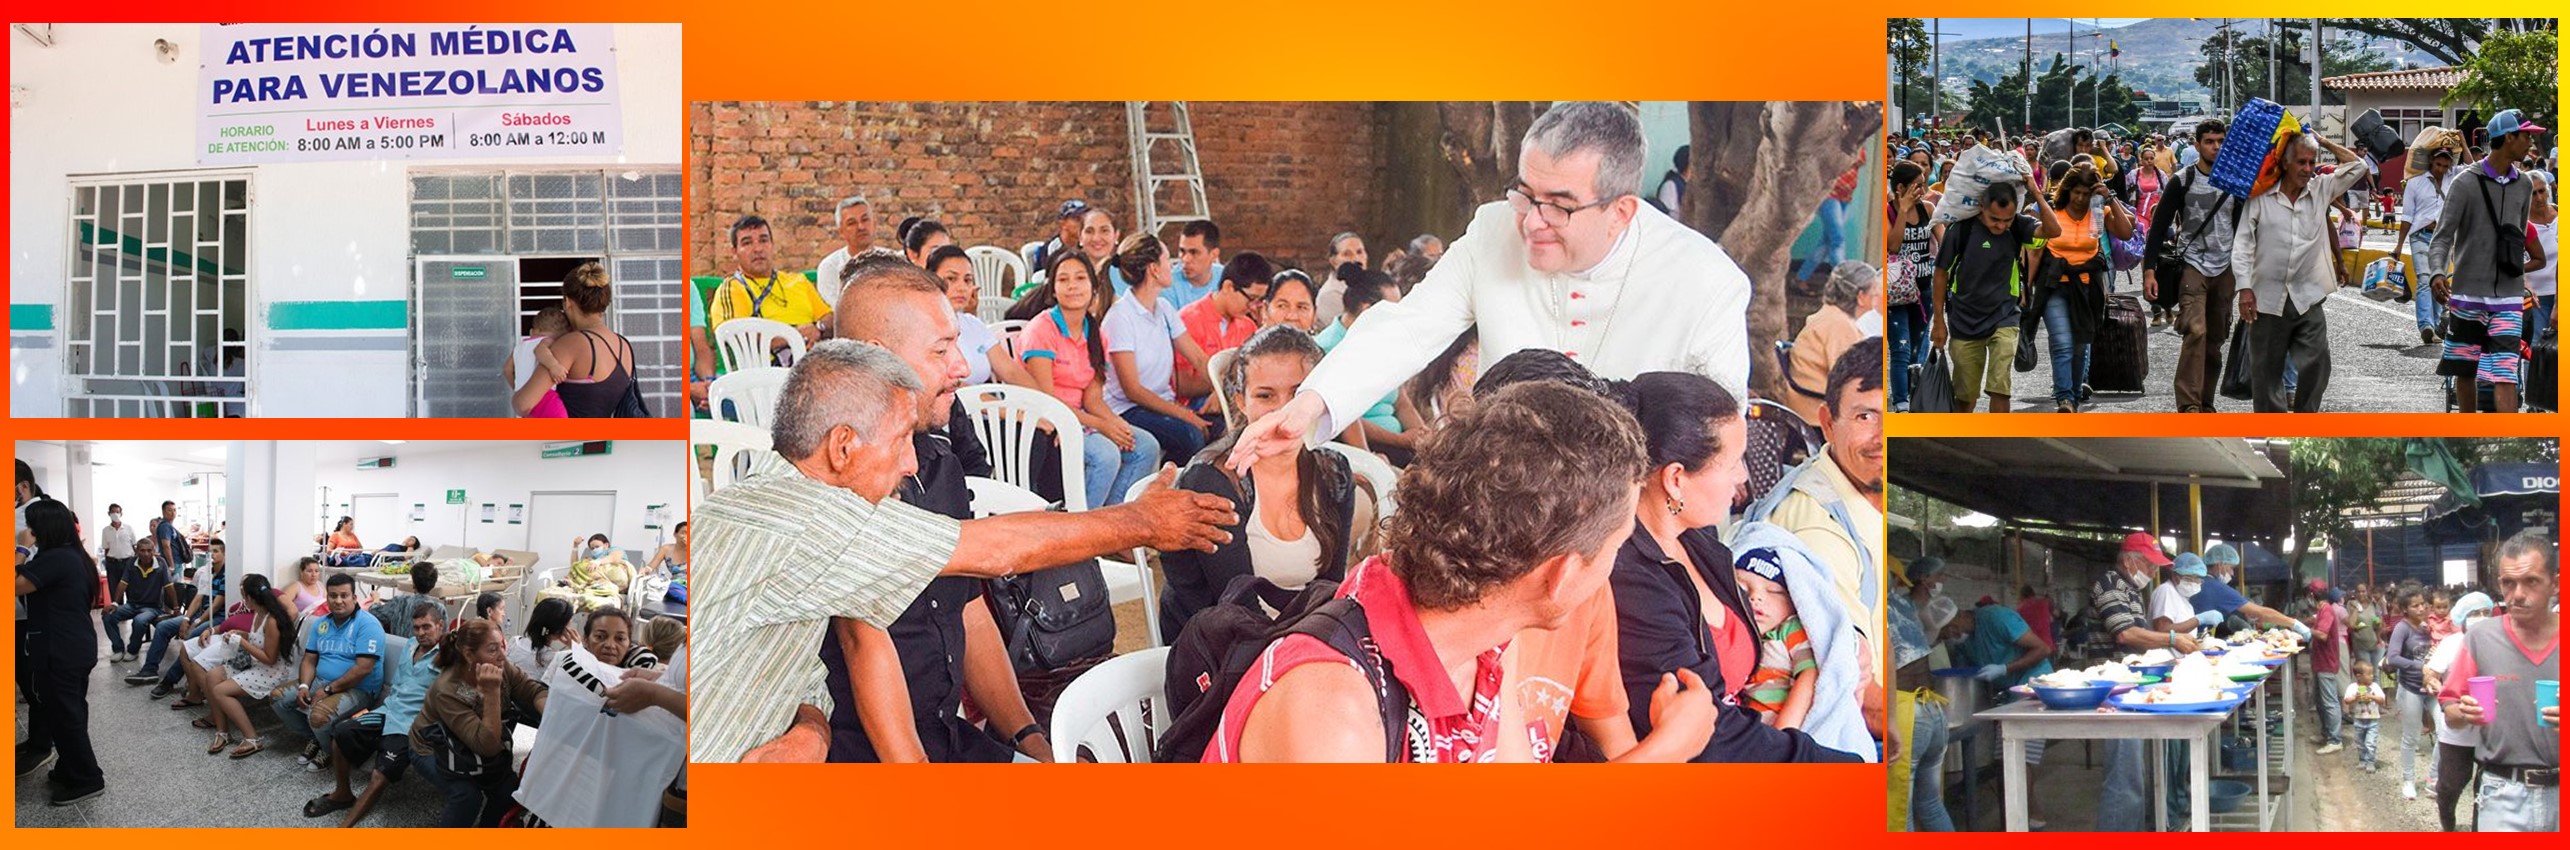 Víctor Ochoa, obispo de Cúcuta pide médicos e insumos para la atención a venezolanos